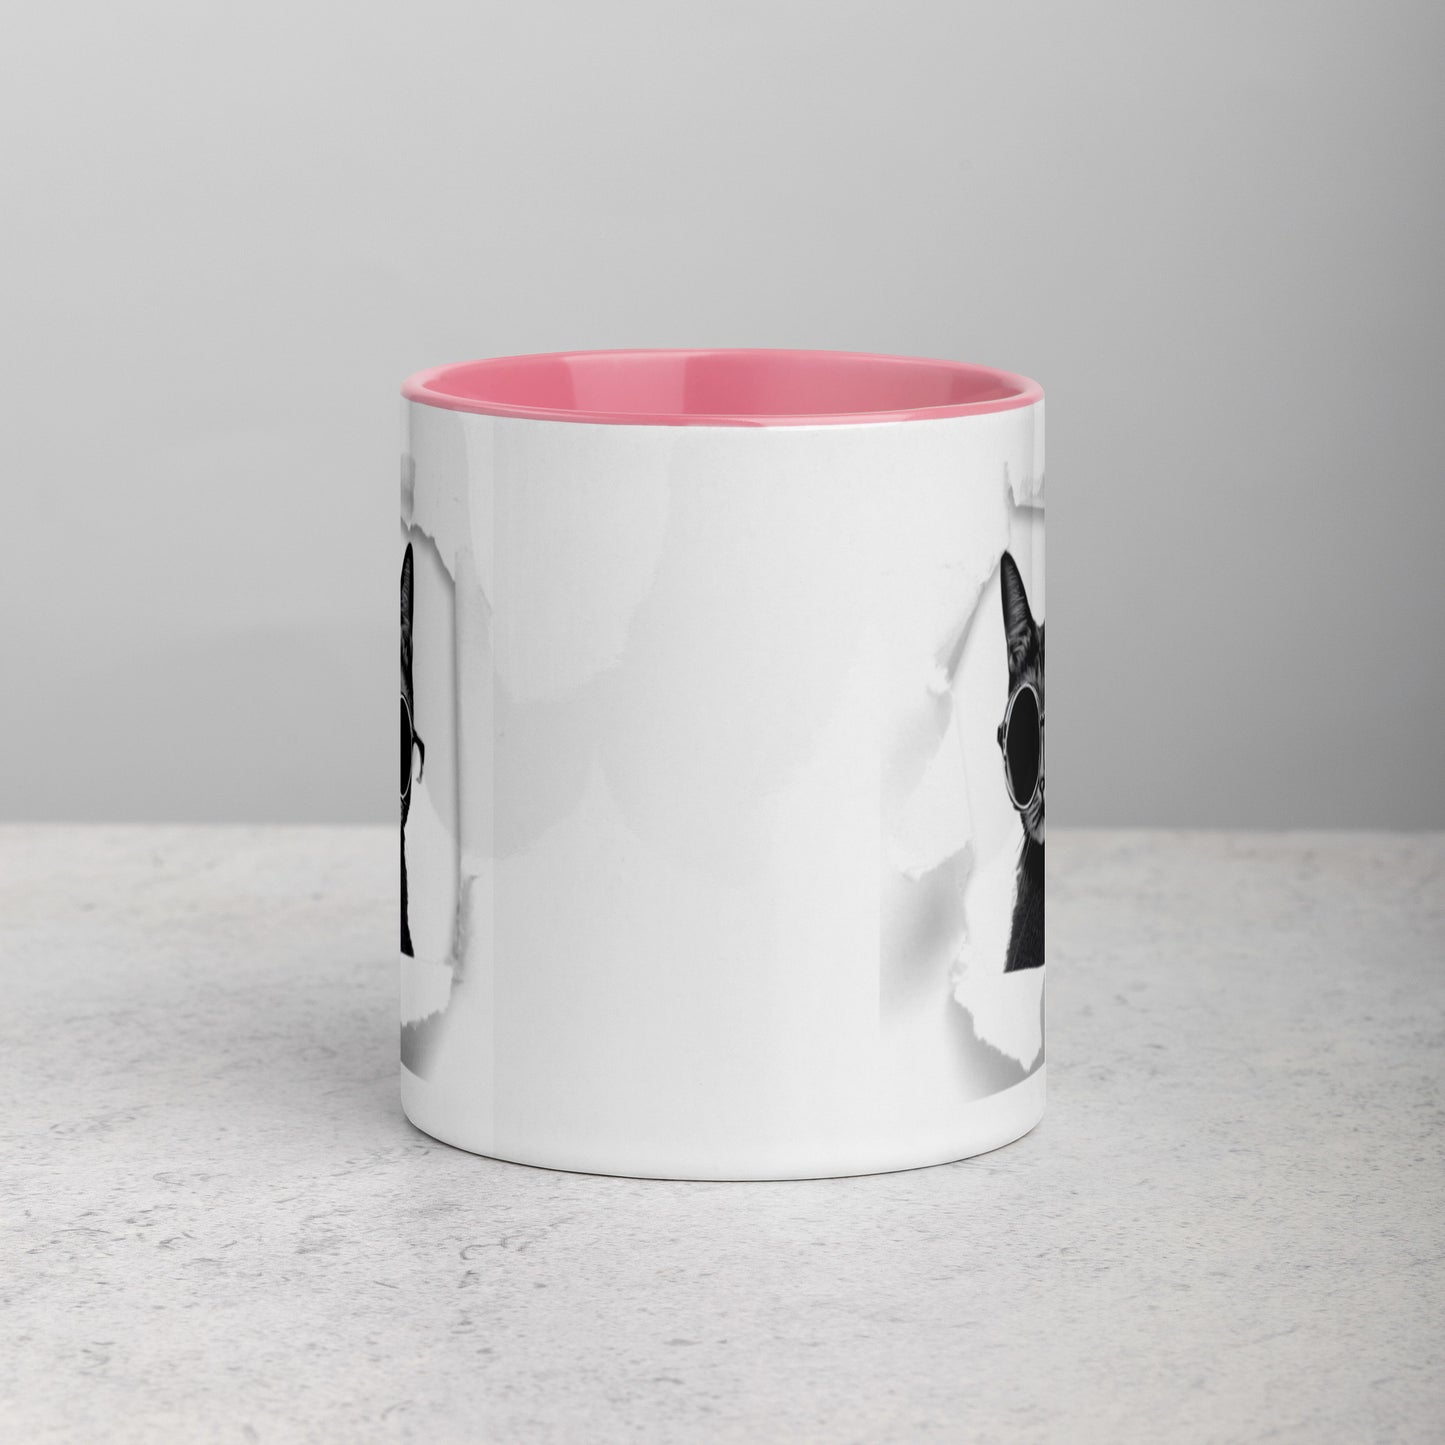 Colorful "Breakout Cat" Mug